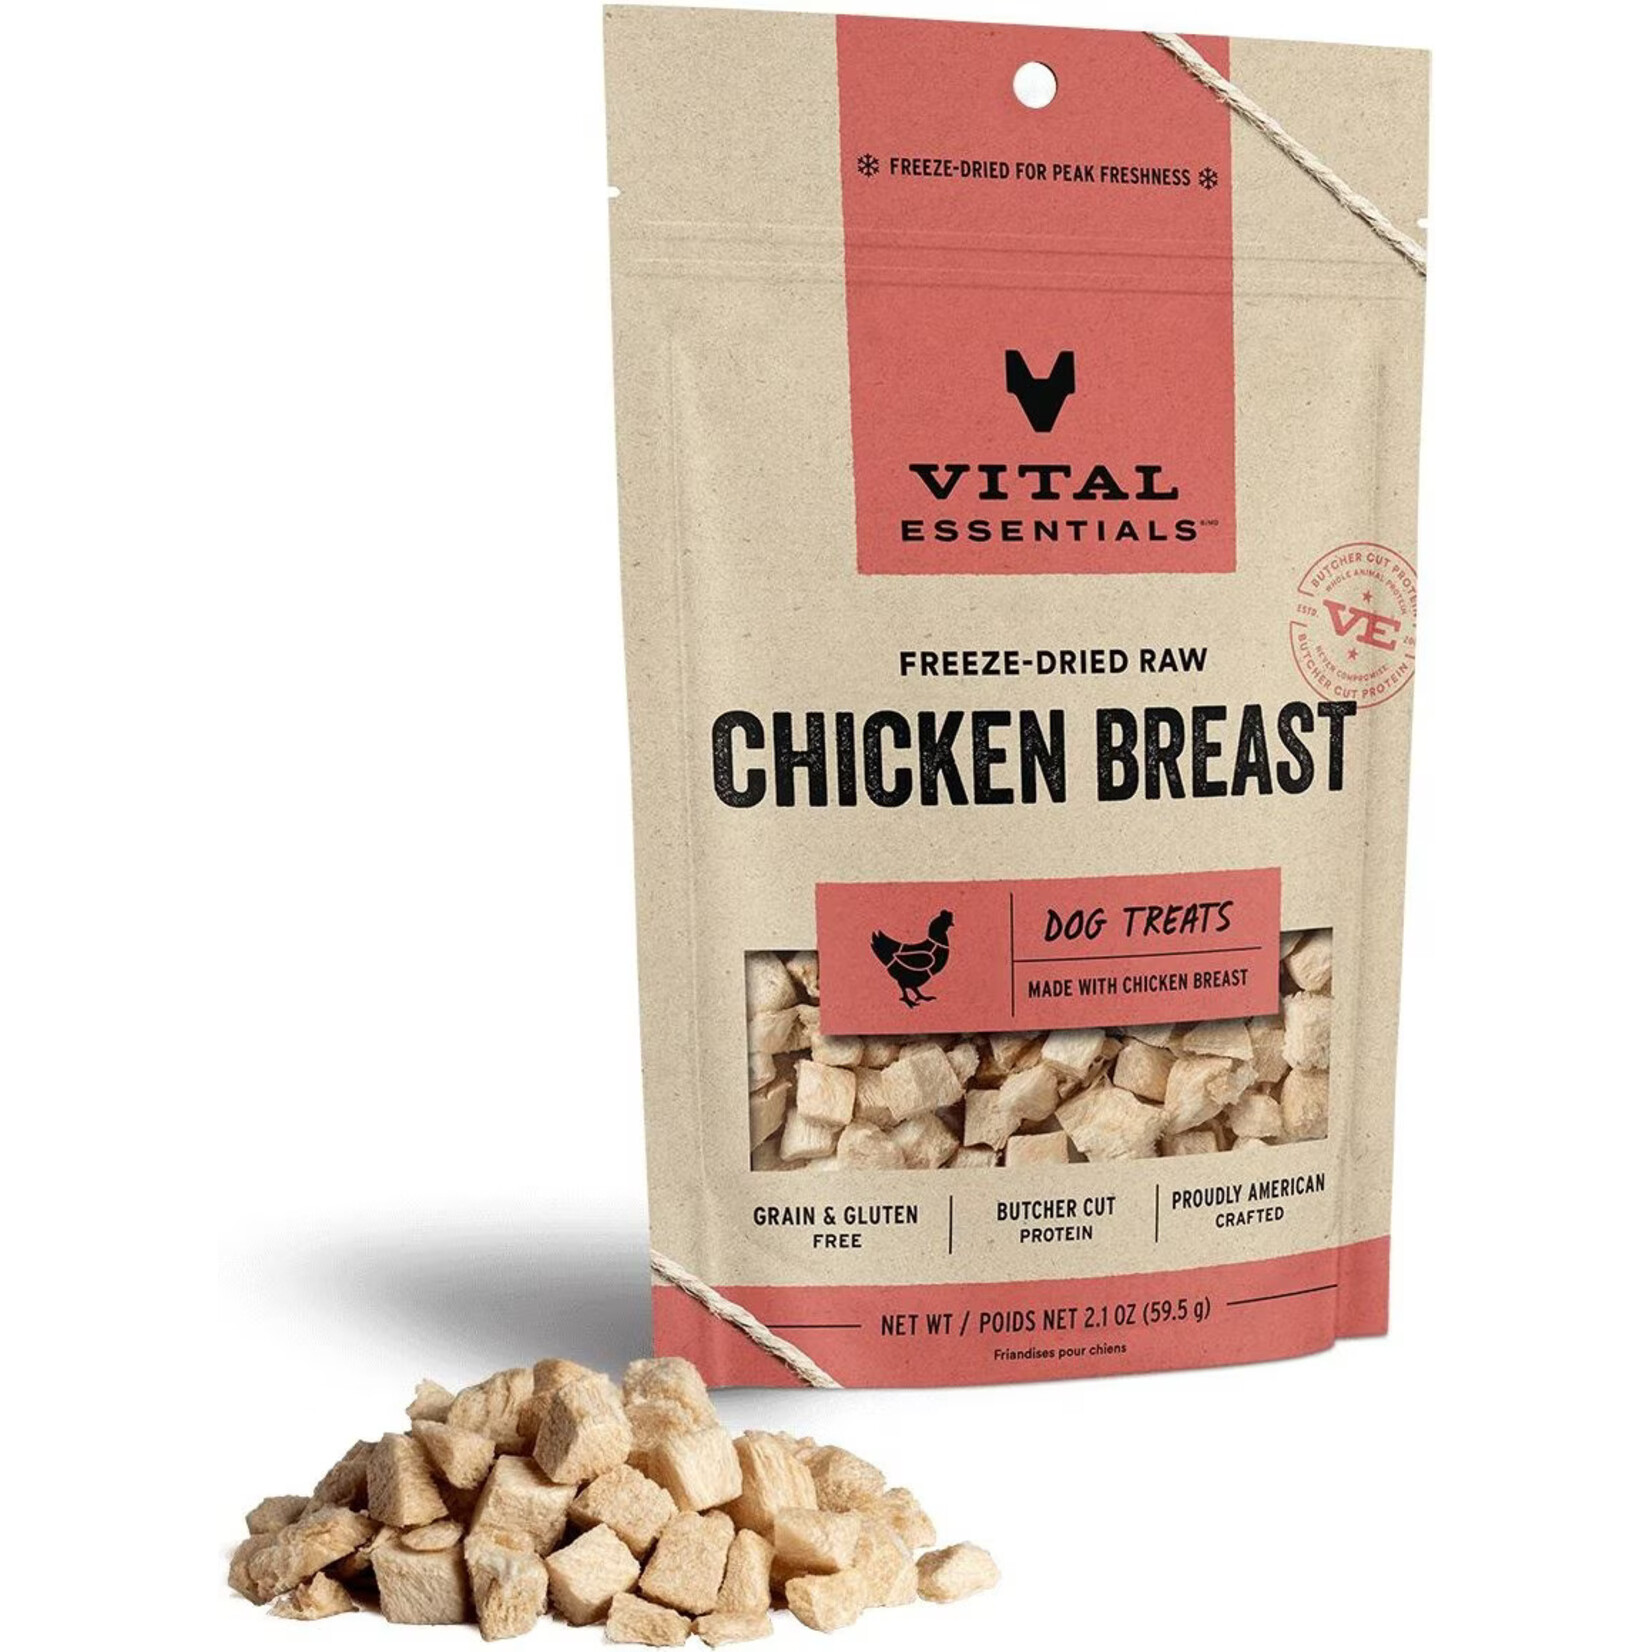 Vital Essentials Vital Essentials Freeze-Dried Raw Chicken Breast Dog Treats